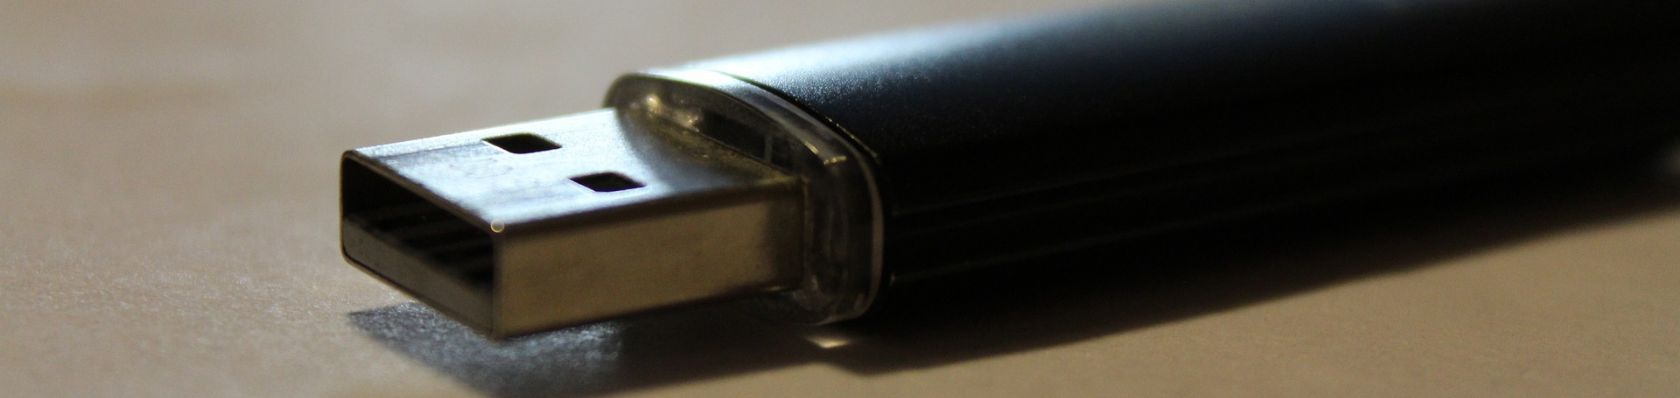 La Migliore Chiavetta USB del 2022 – Confronti e Recensioni delle chiavette USB